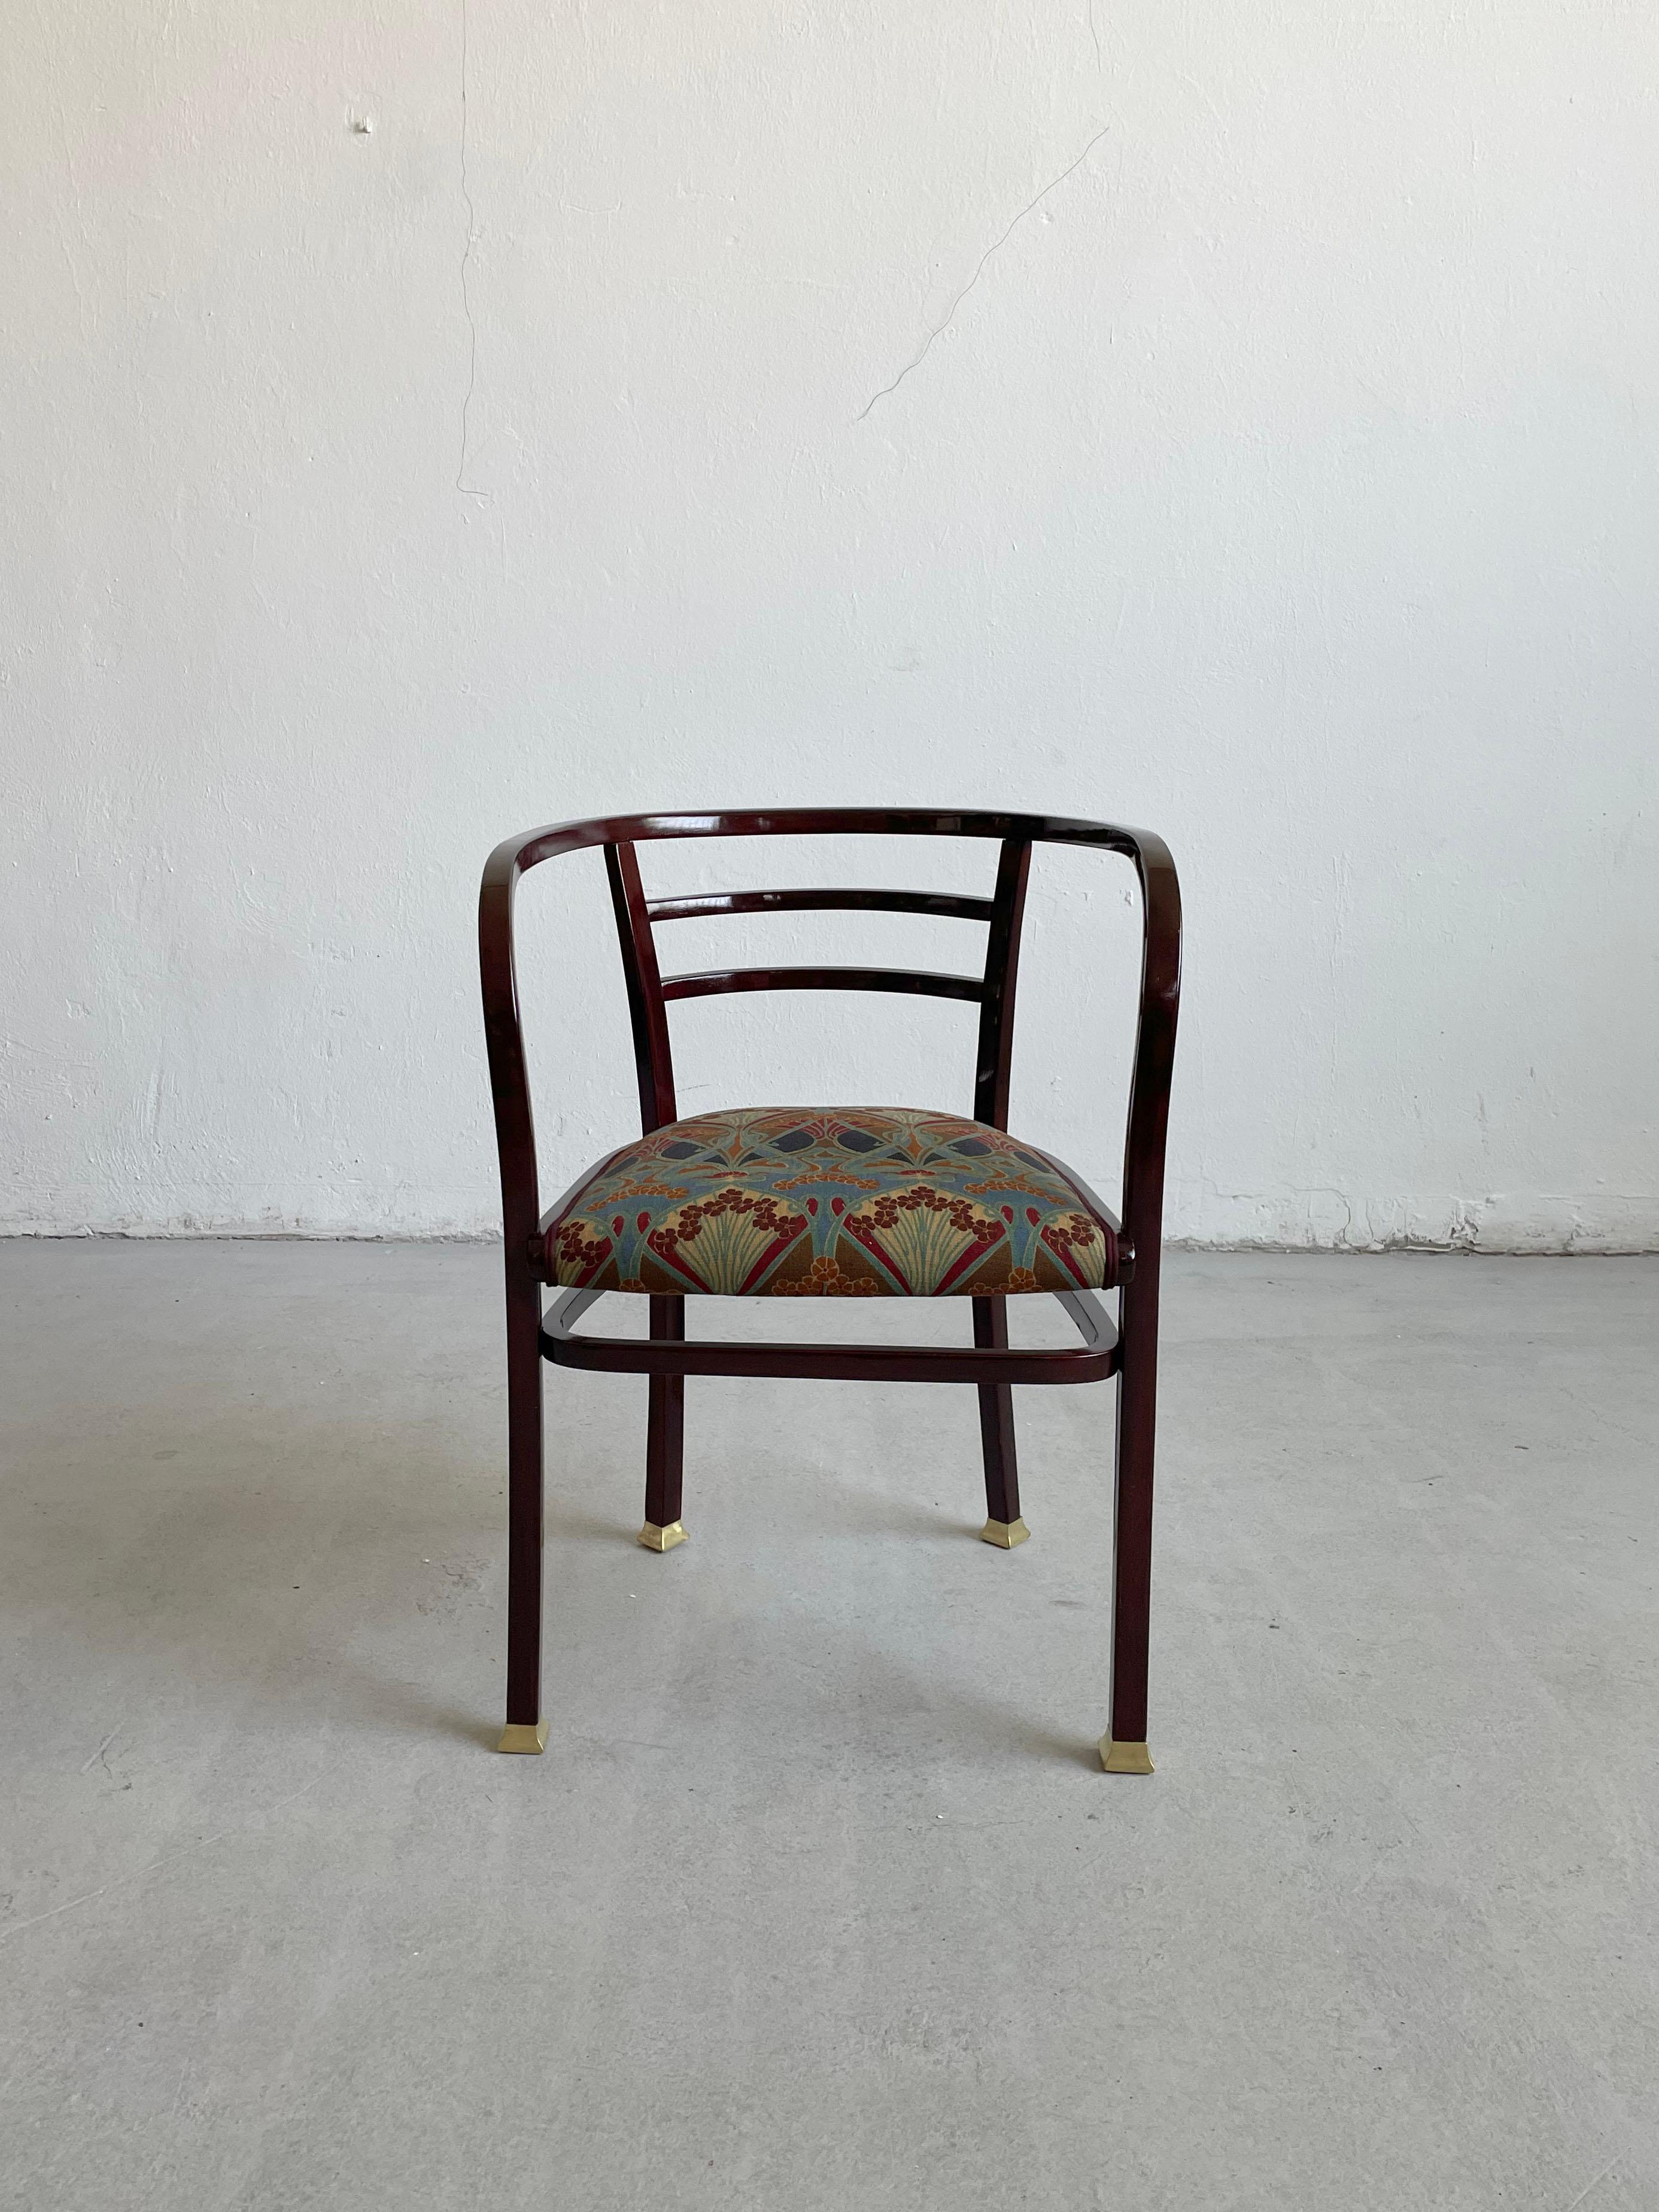 Otto Wagner, fauteuil entièrement restauré, 1902. Bois courbé. Pour Thonet, Vienne.

La chaise a été professionnellement restaurée et retapissée dans un tissu de style Liberty.

 